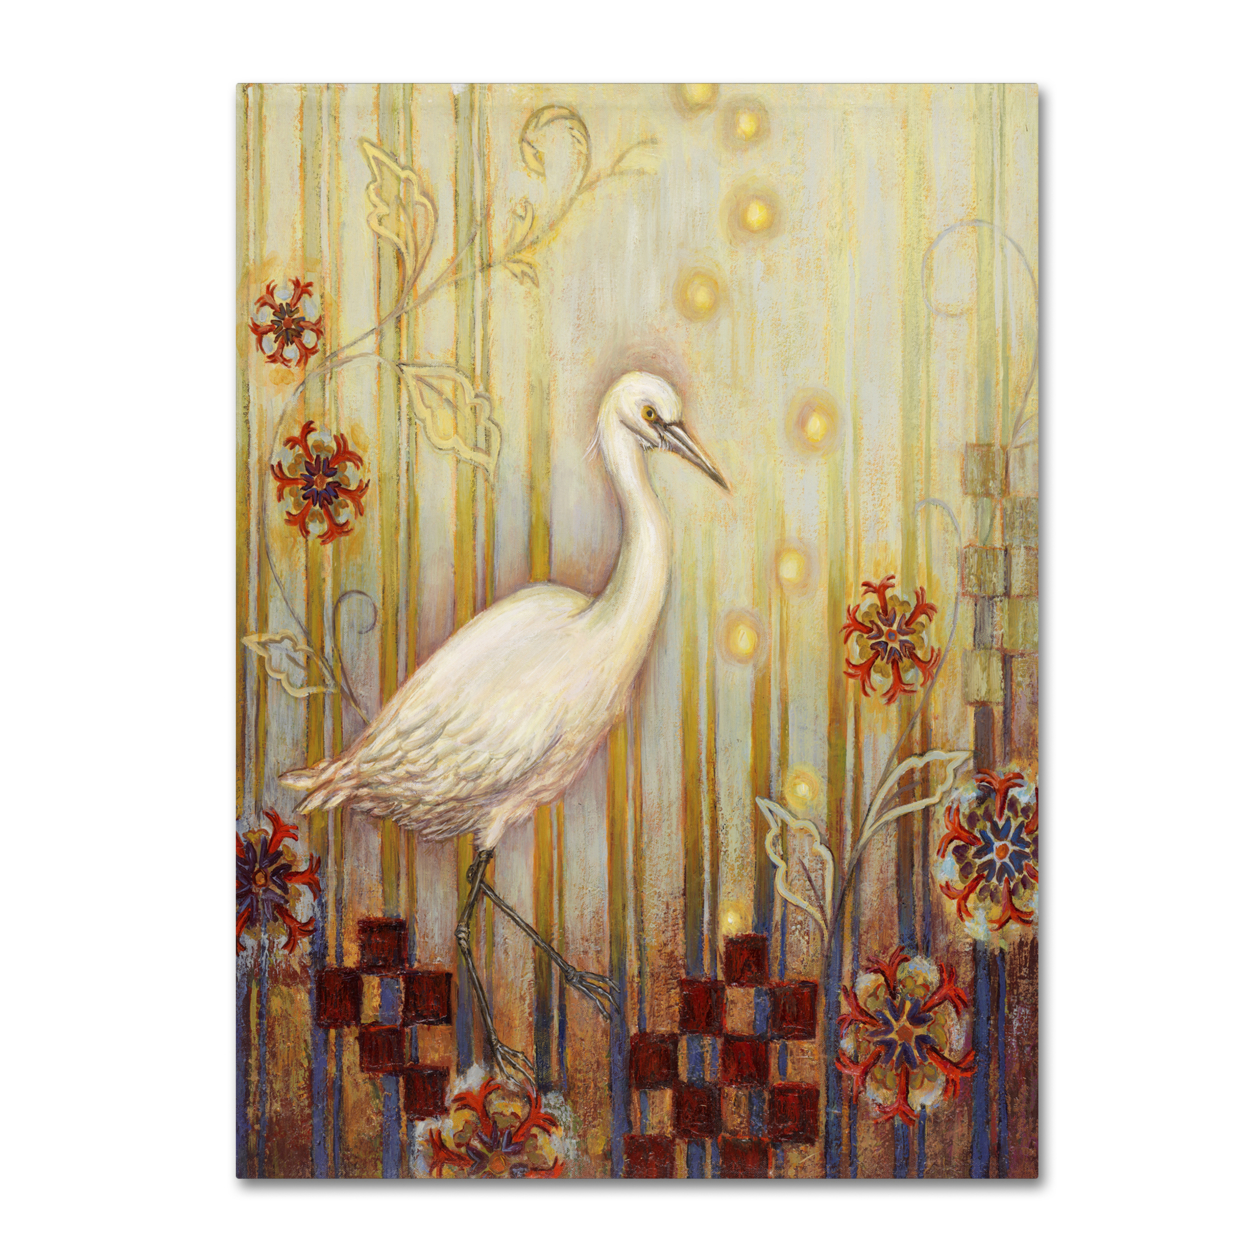 Rachel Paxton 'Ocean Heron' Canvas Wall Art 35 X 47 Inches